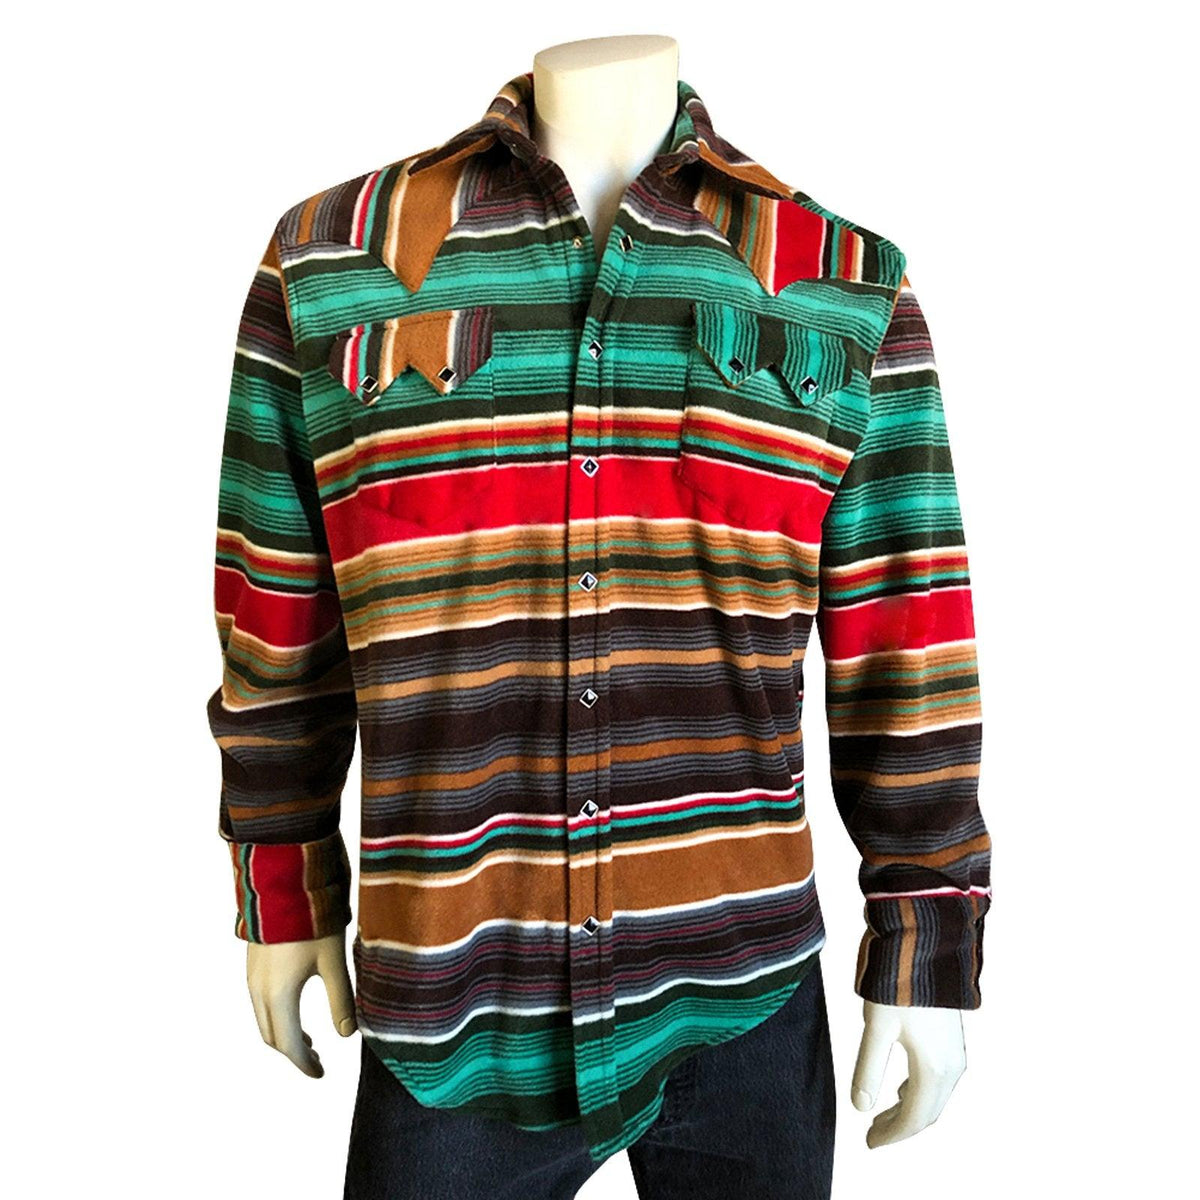 Men's Serape Pattern Fleece Western Shirt in Brown & Green - Flyclothing LLC